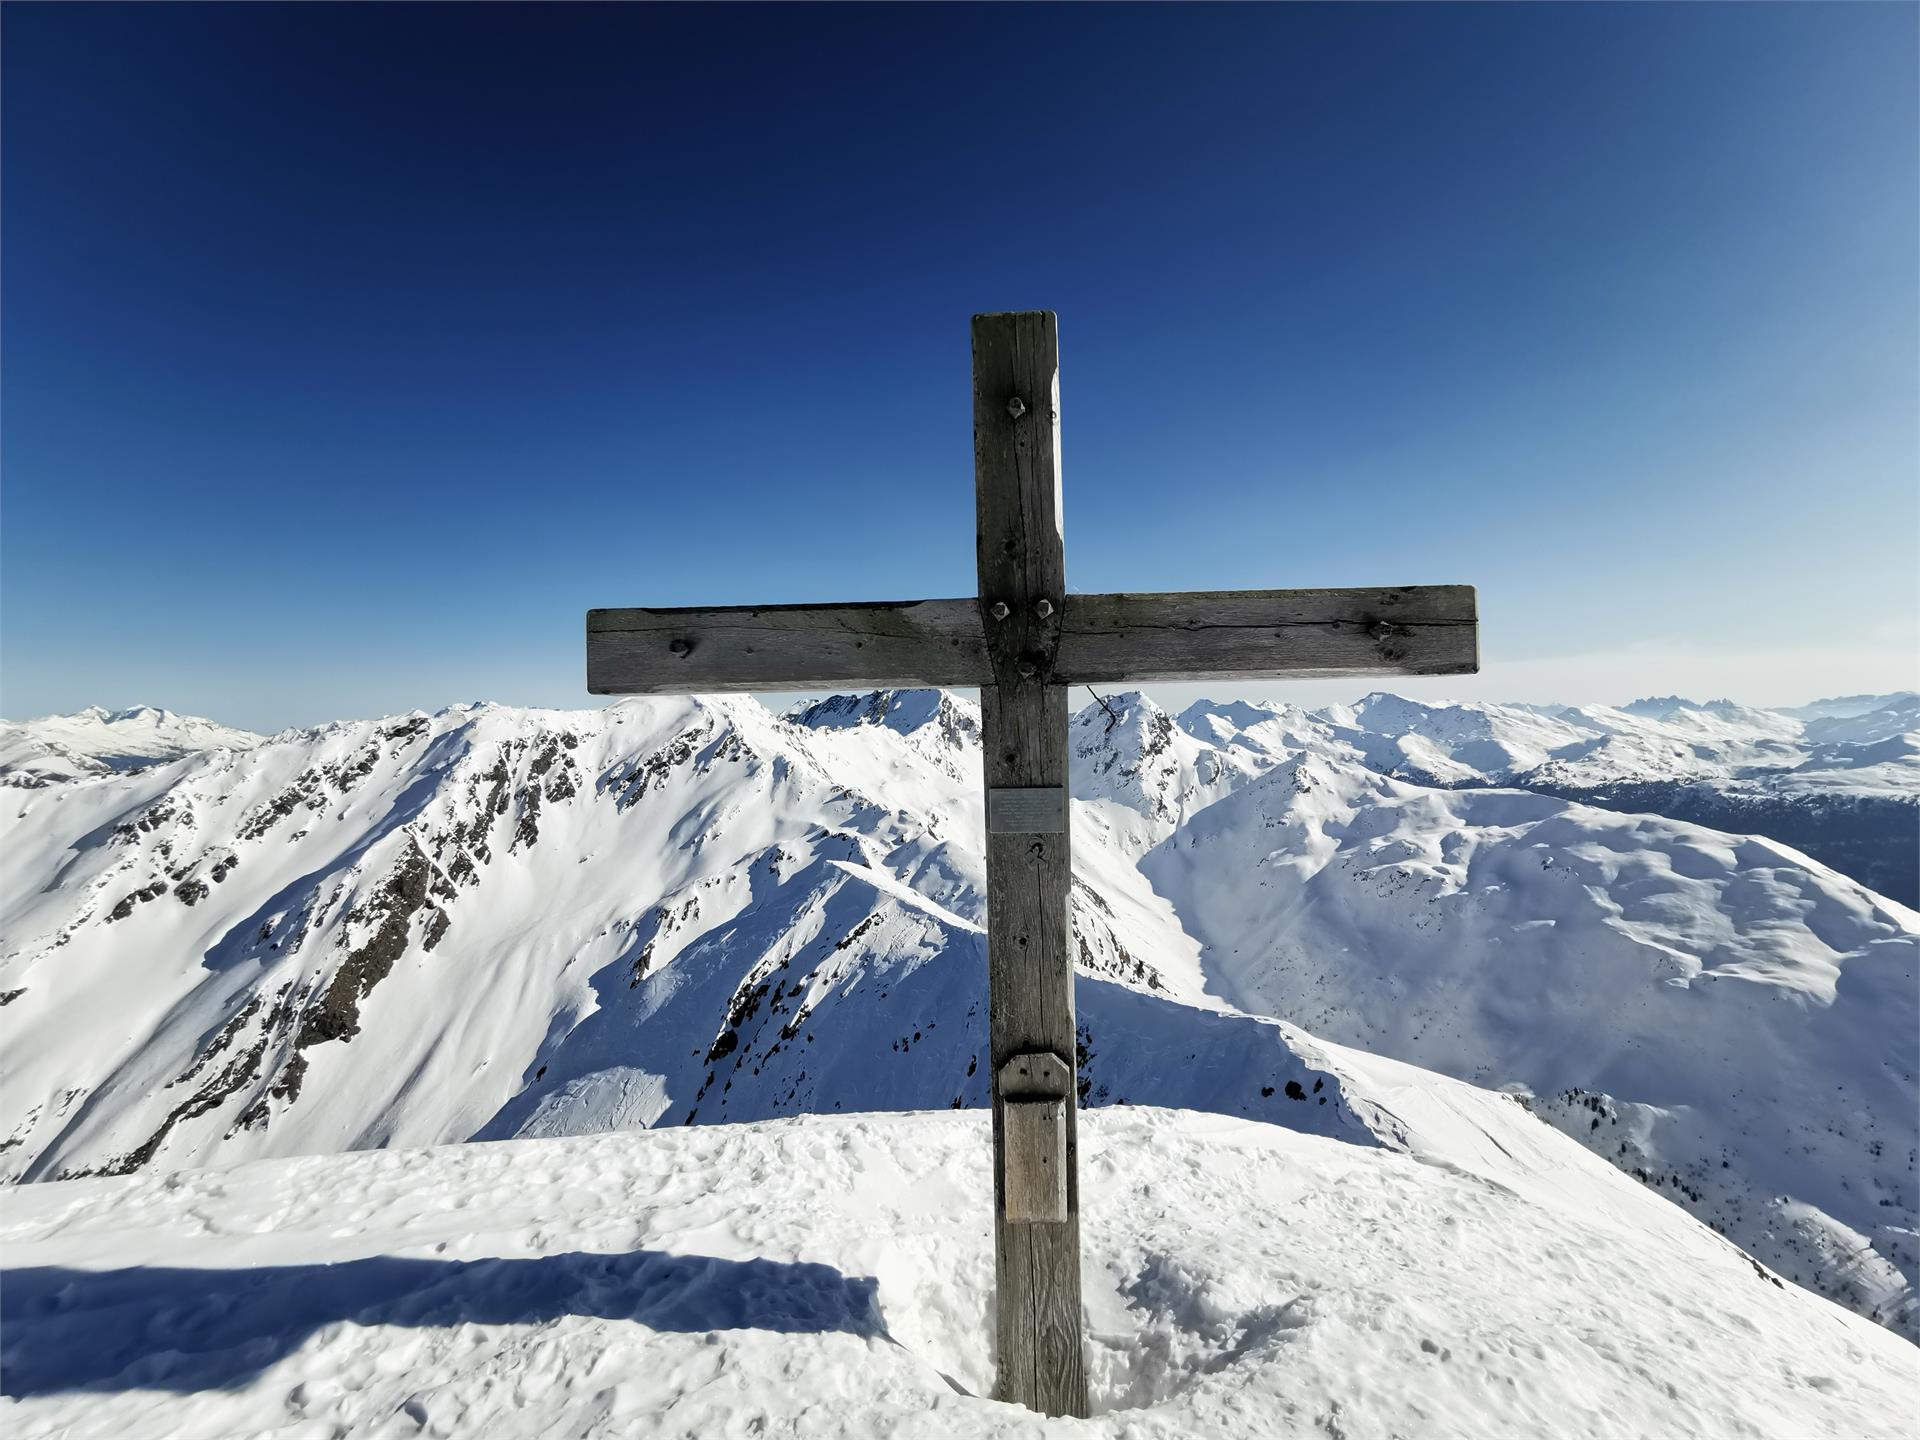 Escursione sci alpinistica sull’Alpenspitze (2477 m)